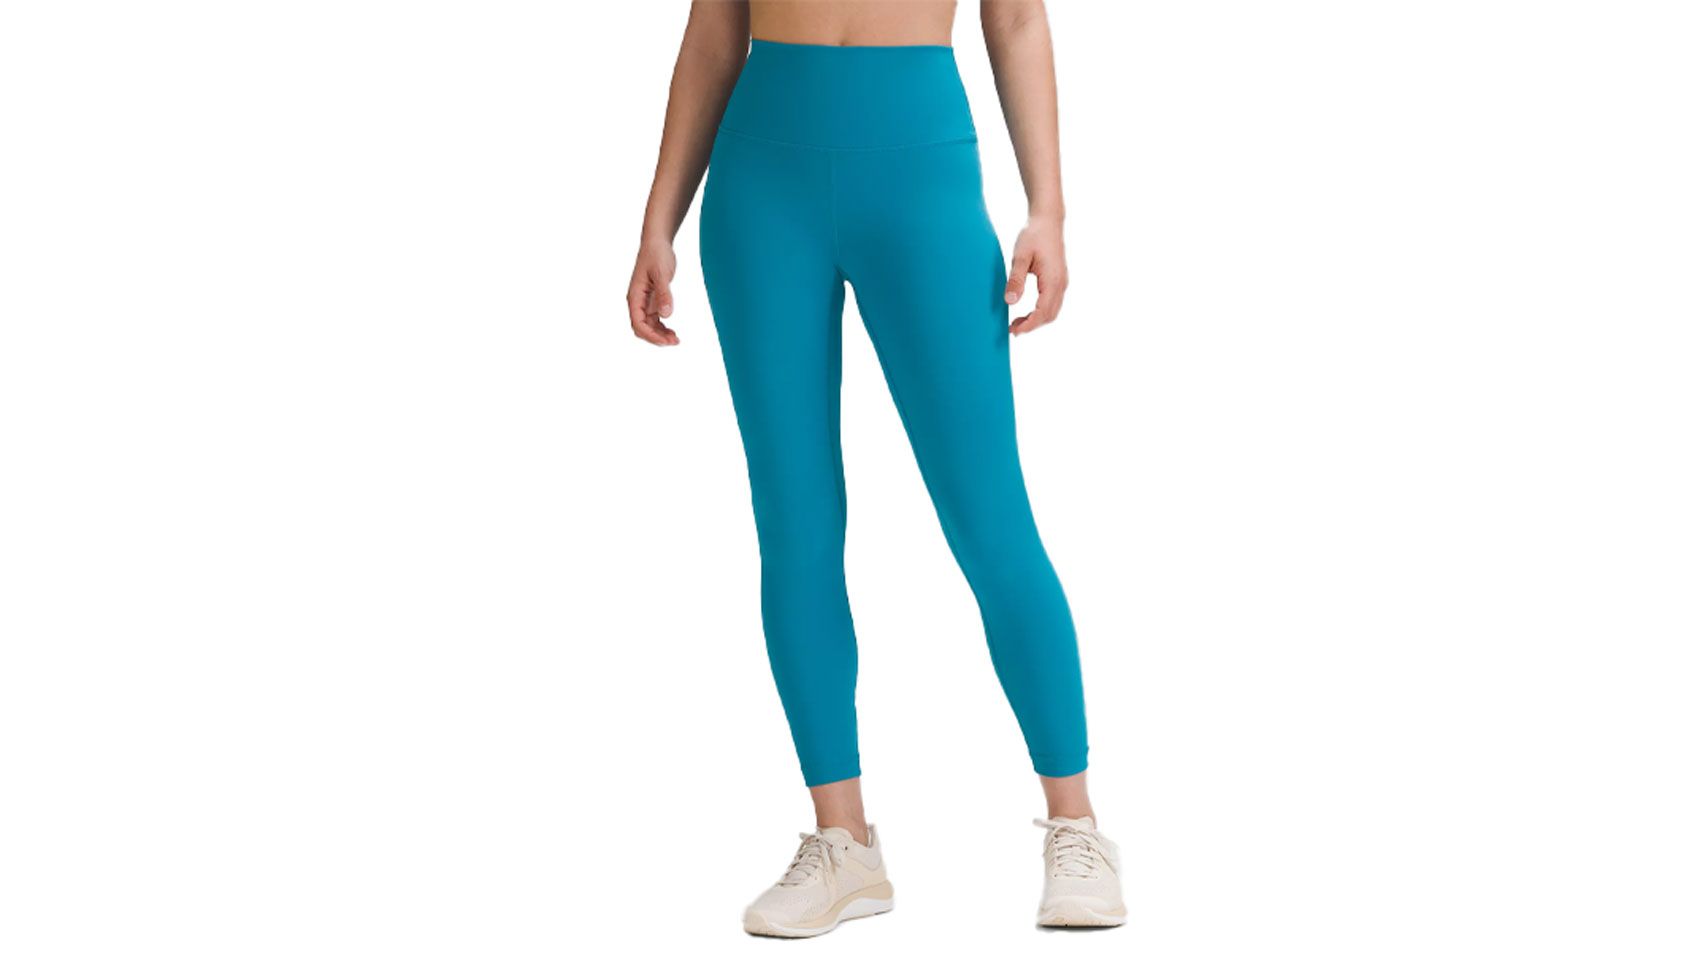 Lululemon customers SLAM the fitness retailer over $298 running leggings